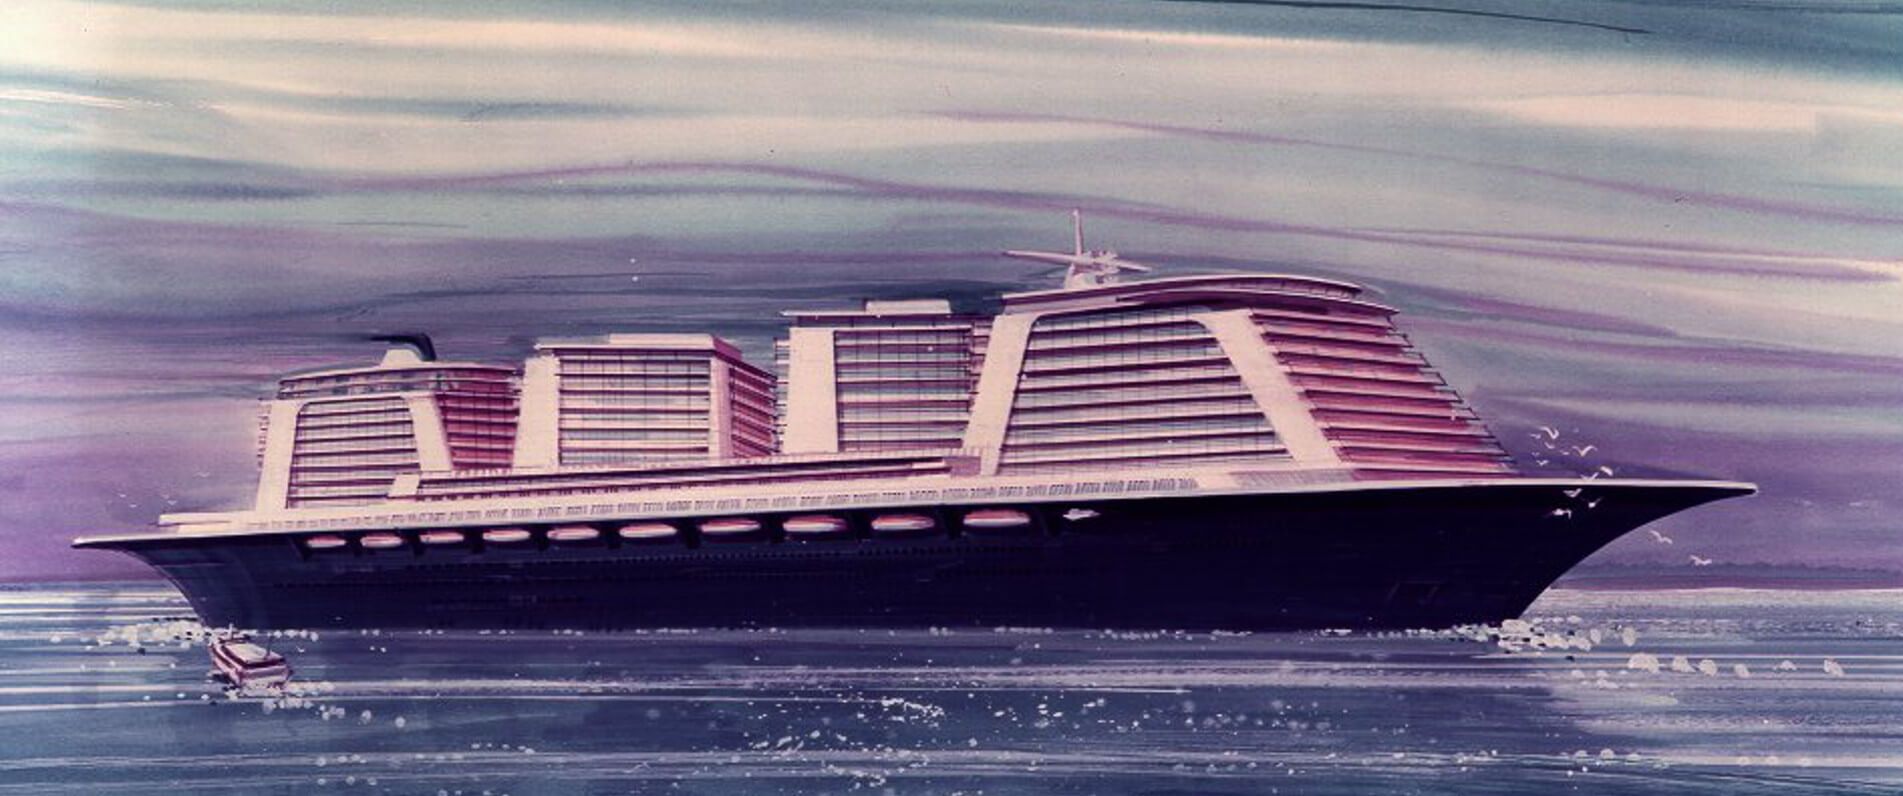 conceptual design of new cruise ship